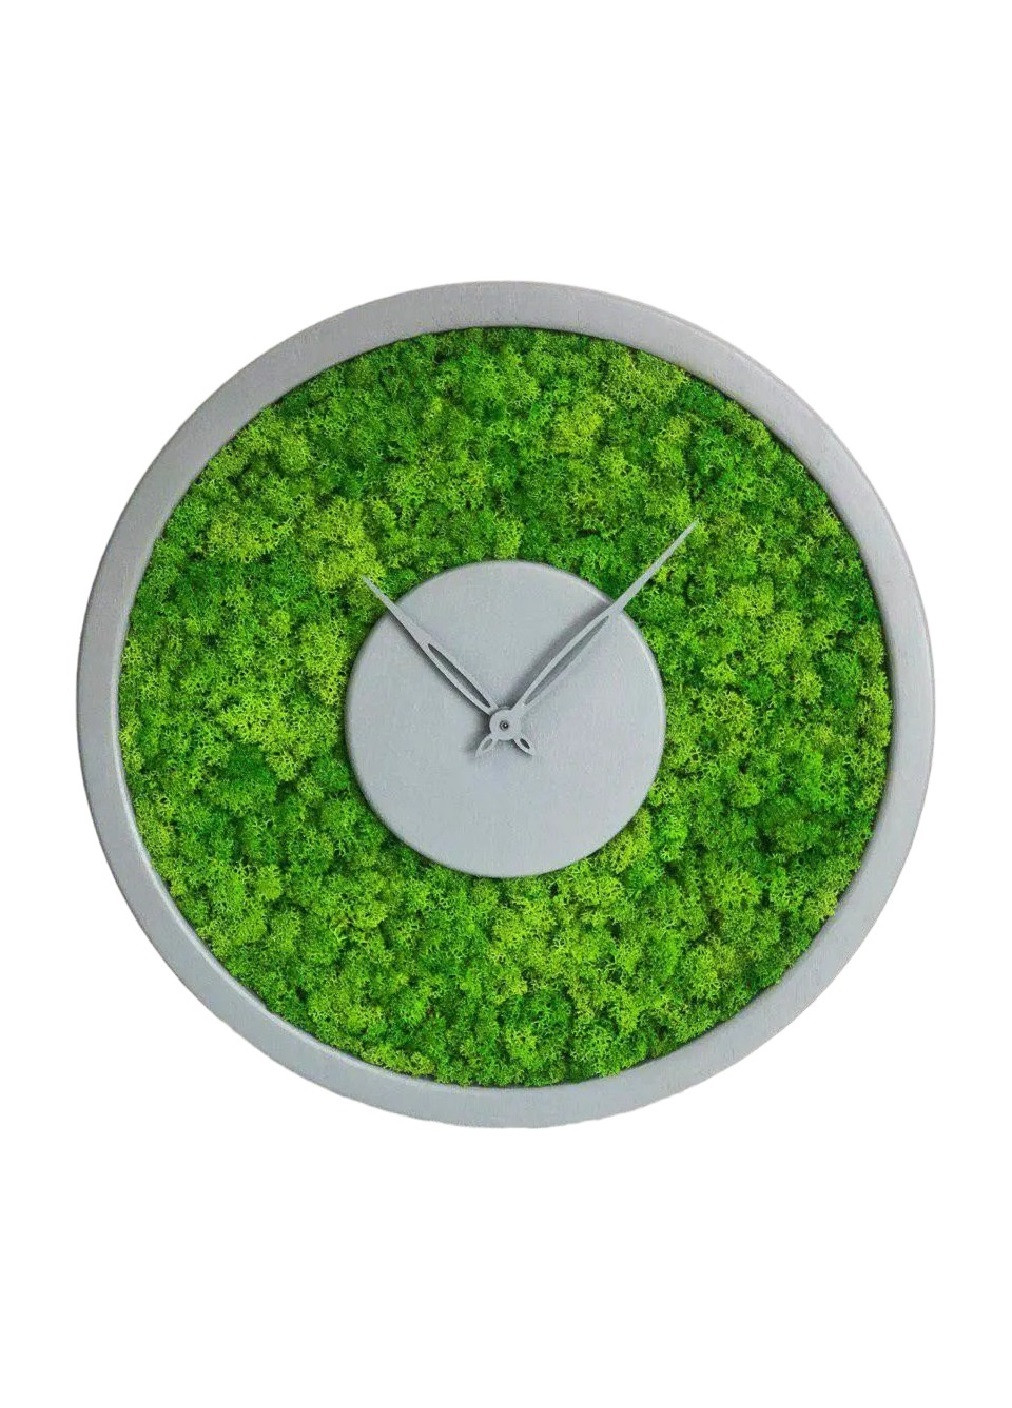 Годинник настінний стильний практичний універсальний круглий зі стабілізованим мохом із дерева 25х25х4 см (475790-Prob) Сірий Unbranded (271518138)